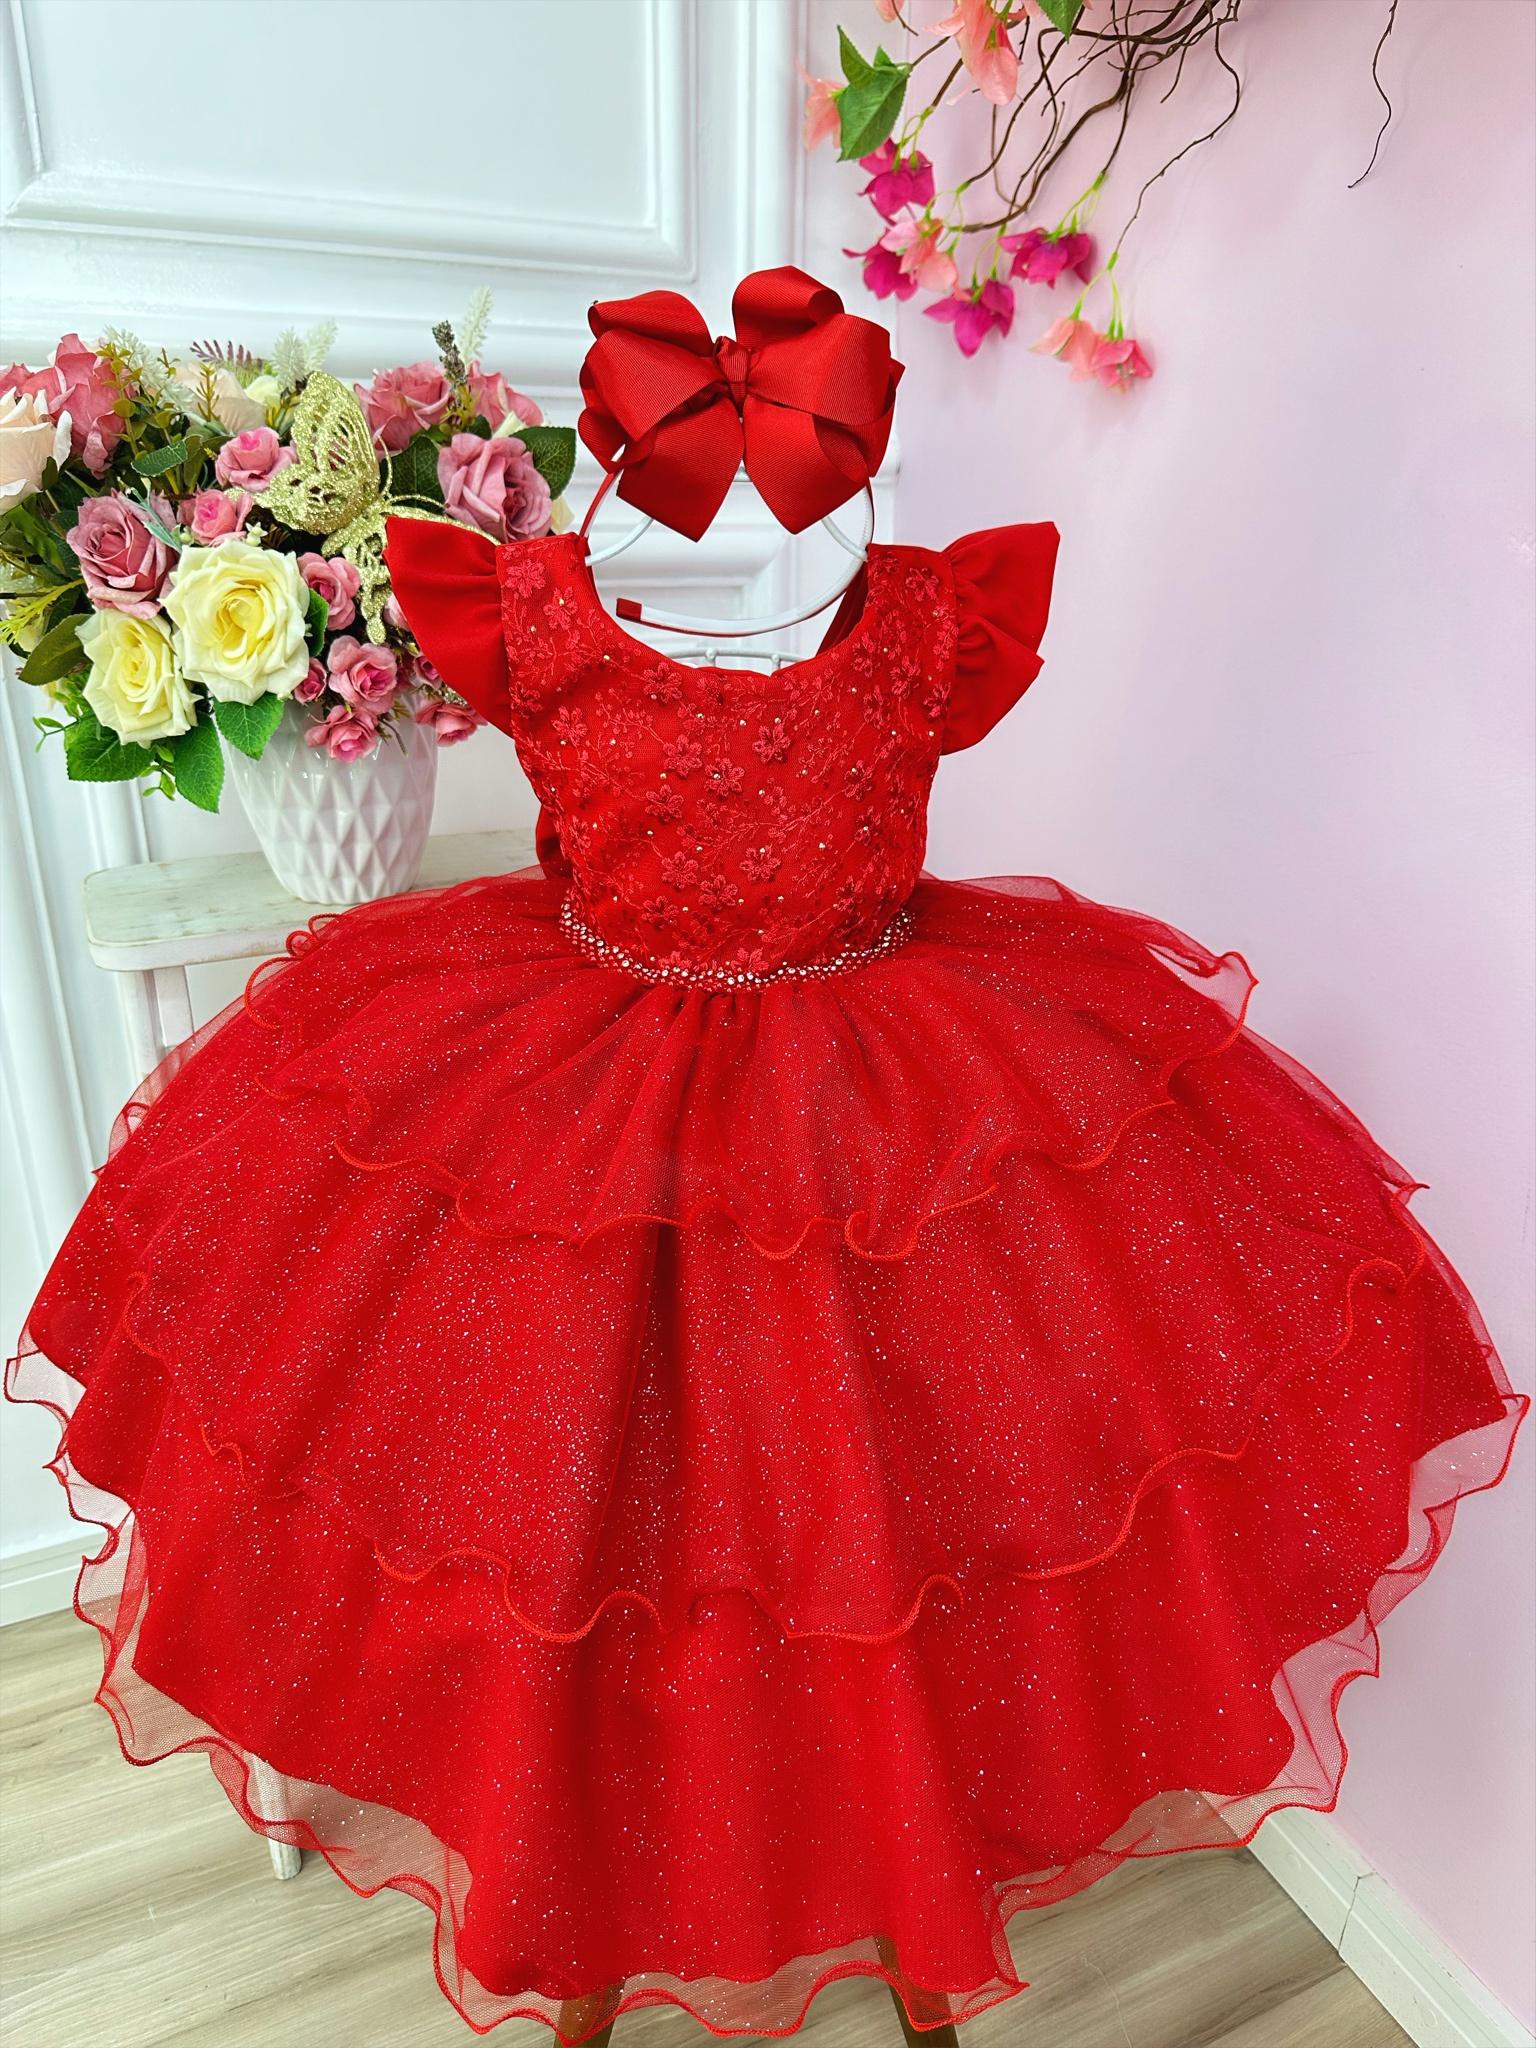 Vestido Infantil Vermelho C/ Renda e Glitter Strass Festas